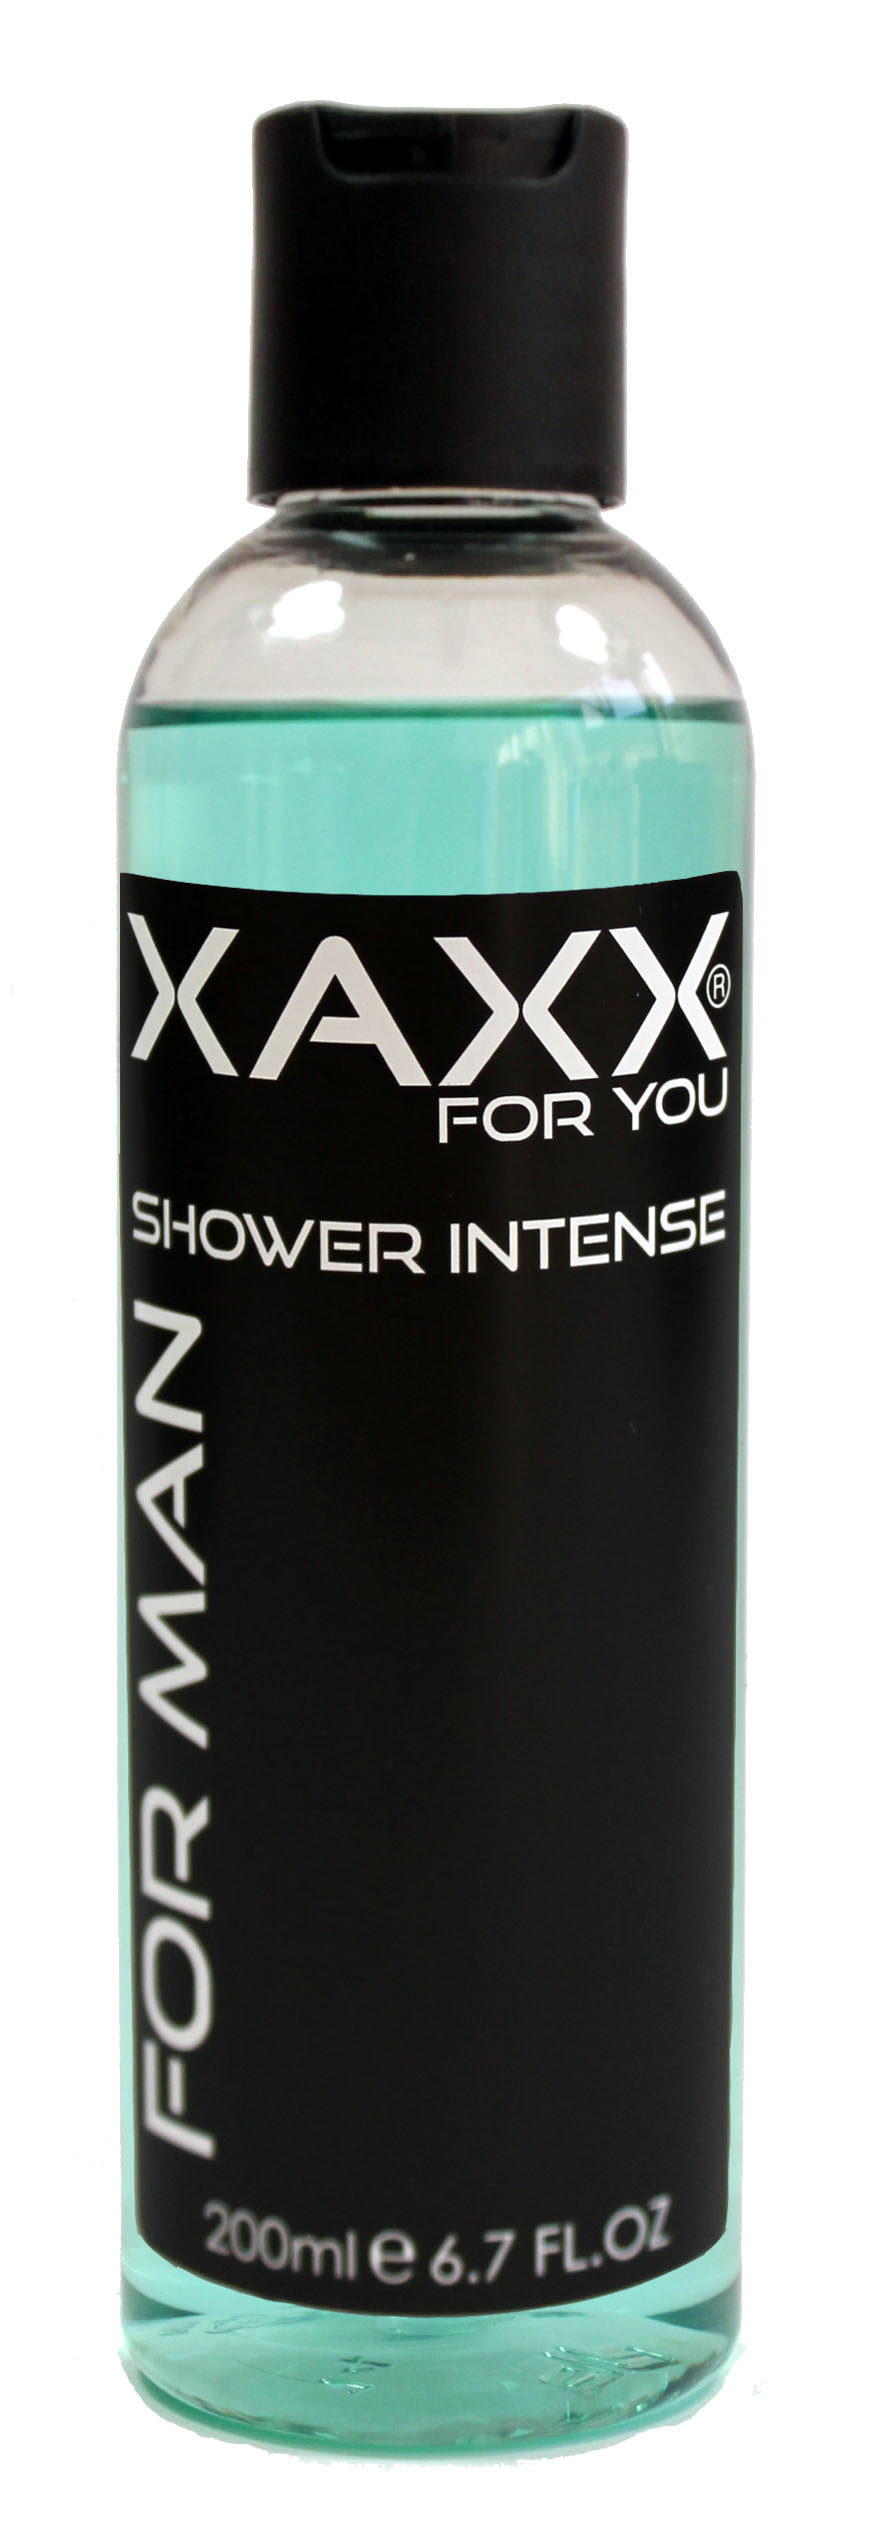 Shower Intens One Insp. By Jean Paul Gaultier La Male